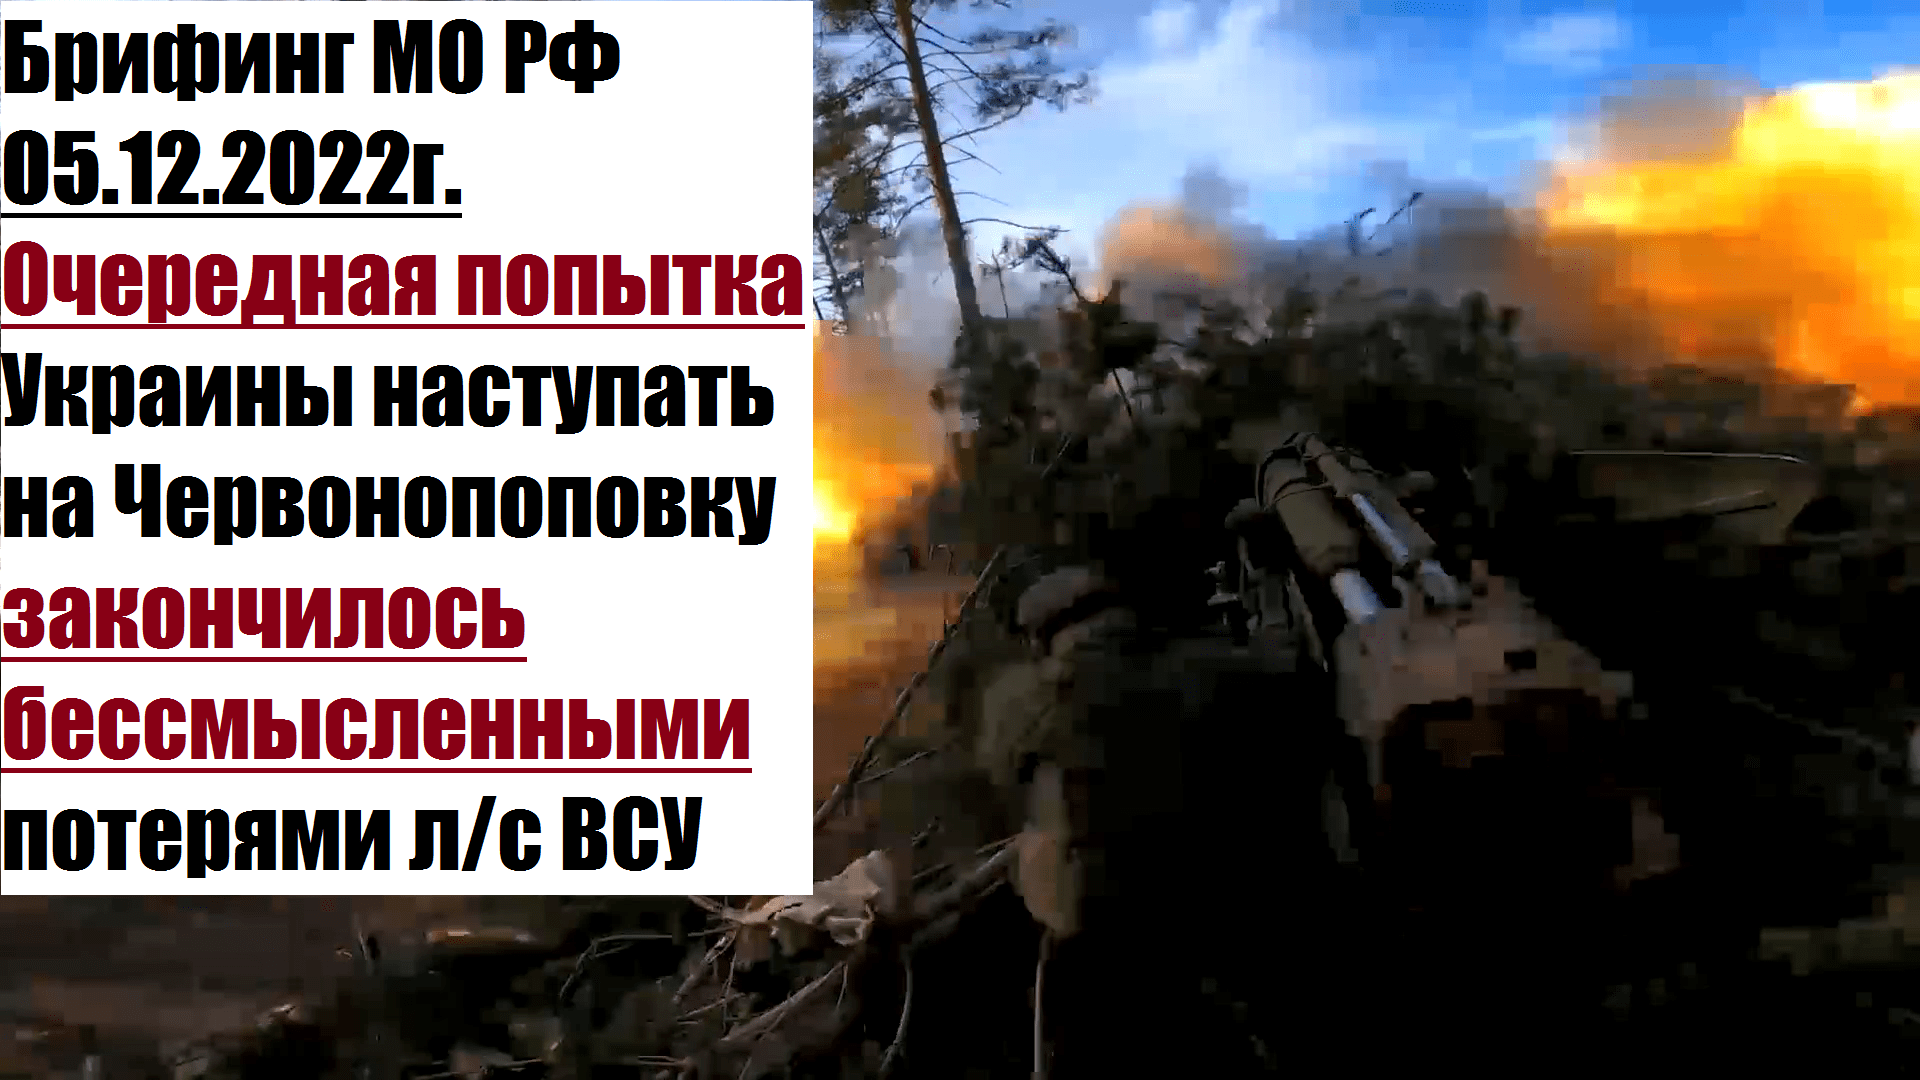 Потери в сво с обеих. Ротная тактическая группа ВСУ. Уничтожено потери России. Подбитые русские танки на Украине.